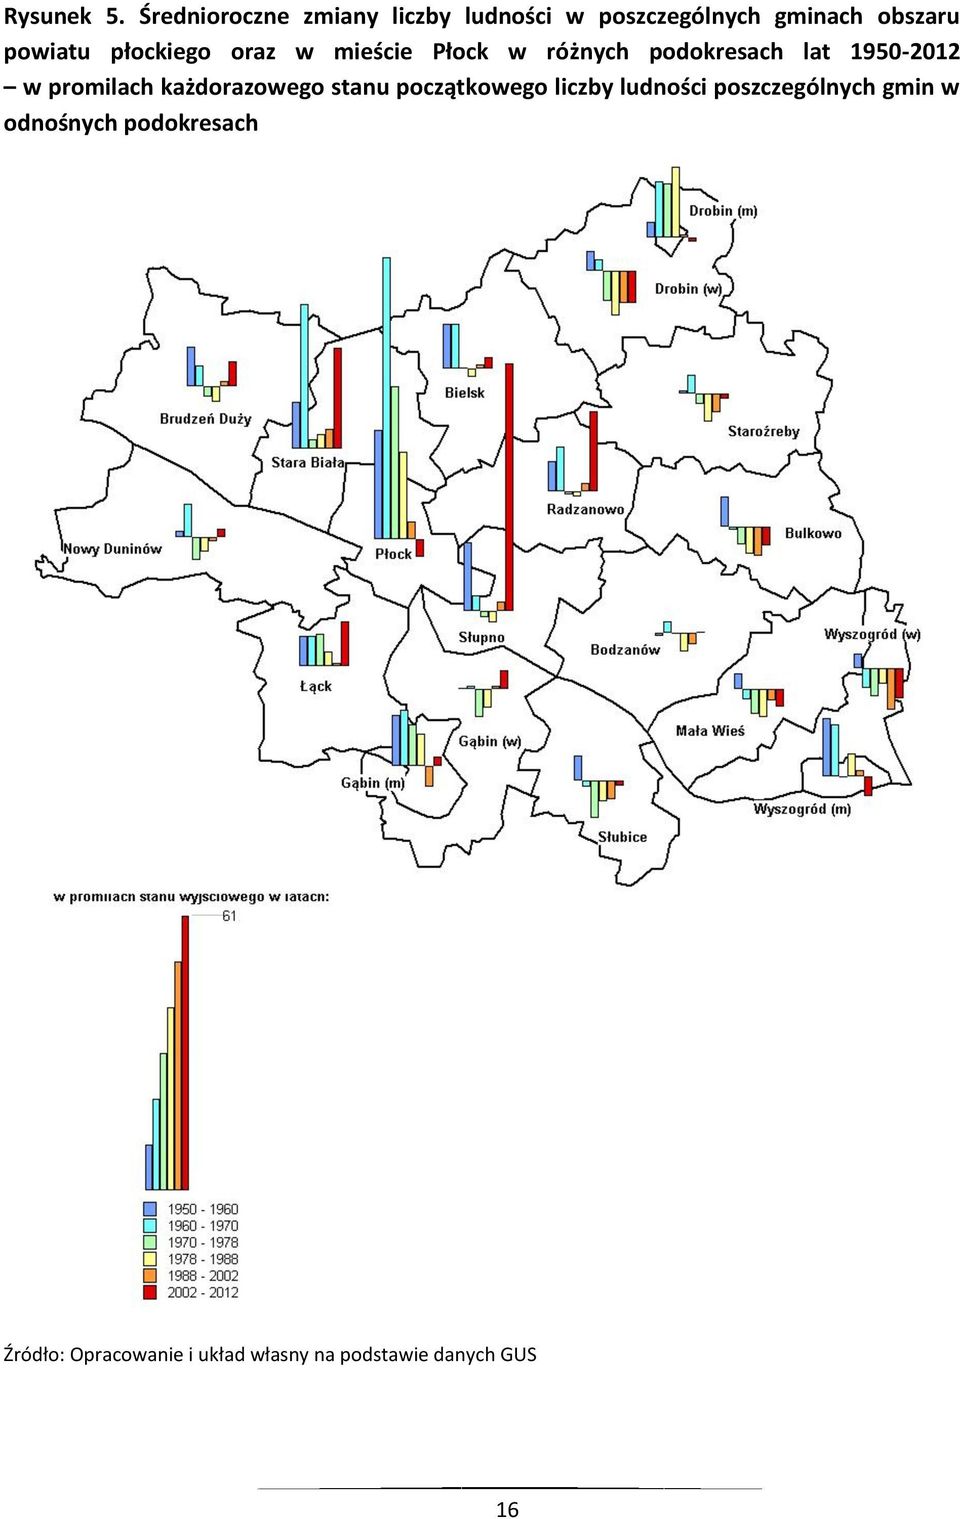 płockiego oraz w mieście Płock w różnych podokresach lat 1950-2012 w promilach